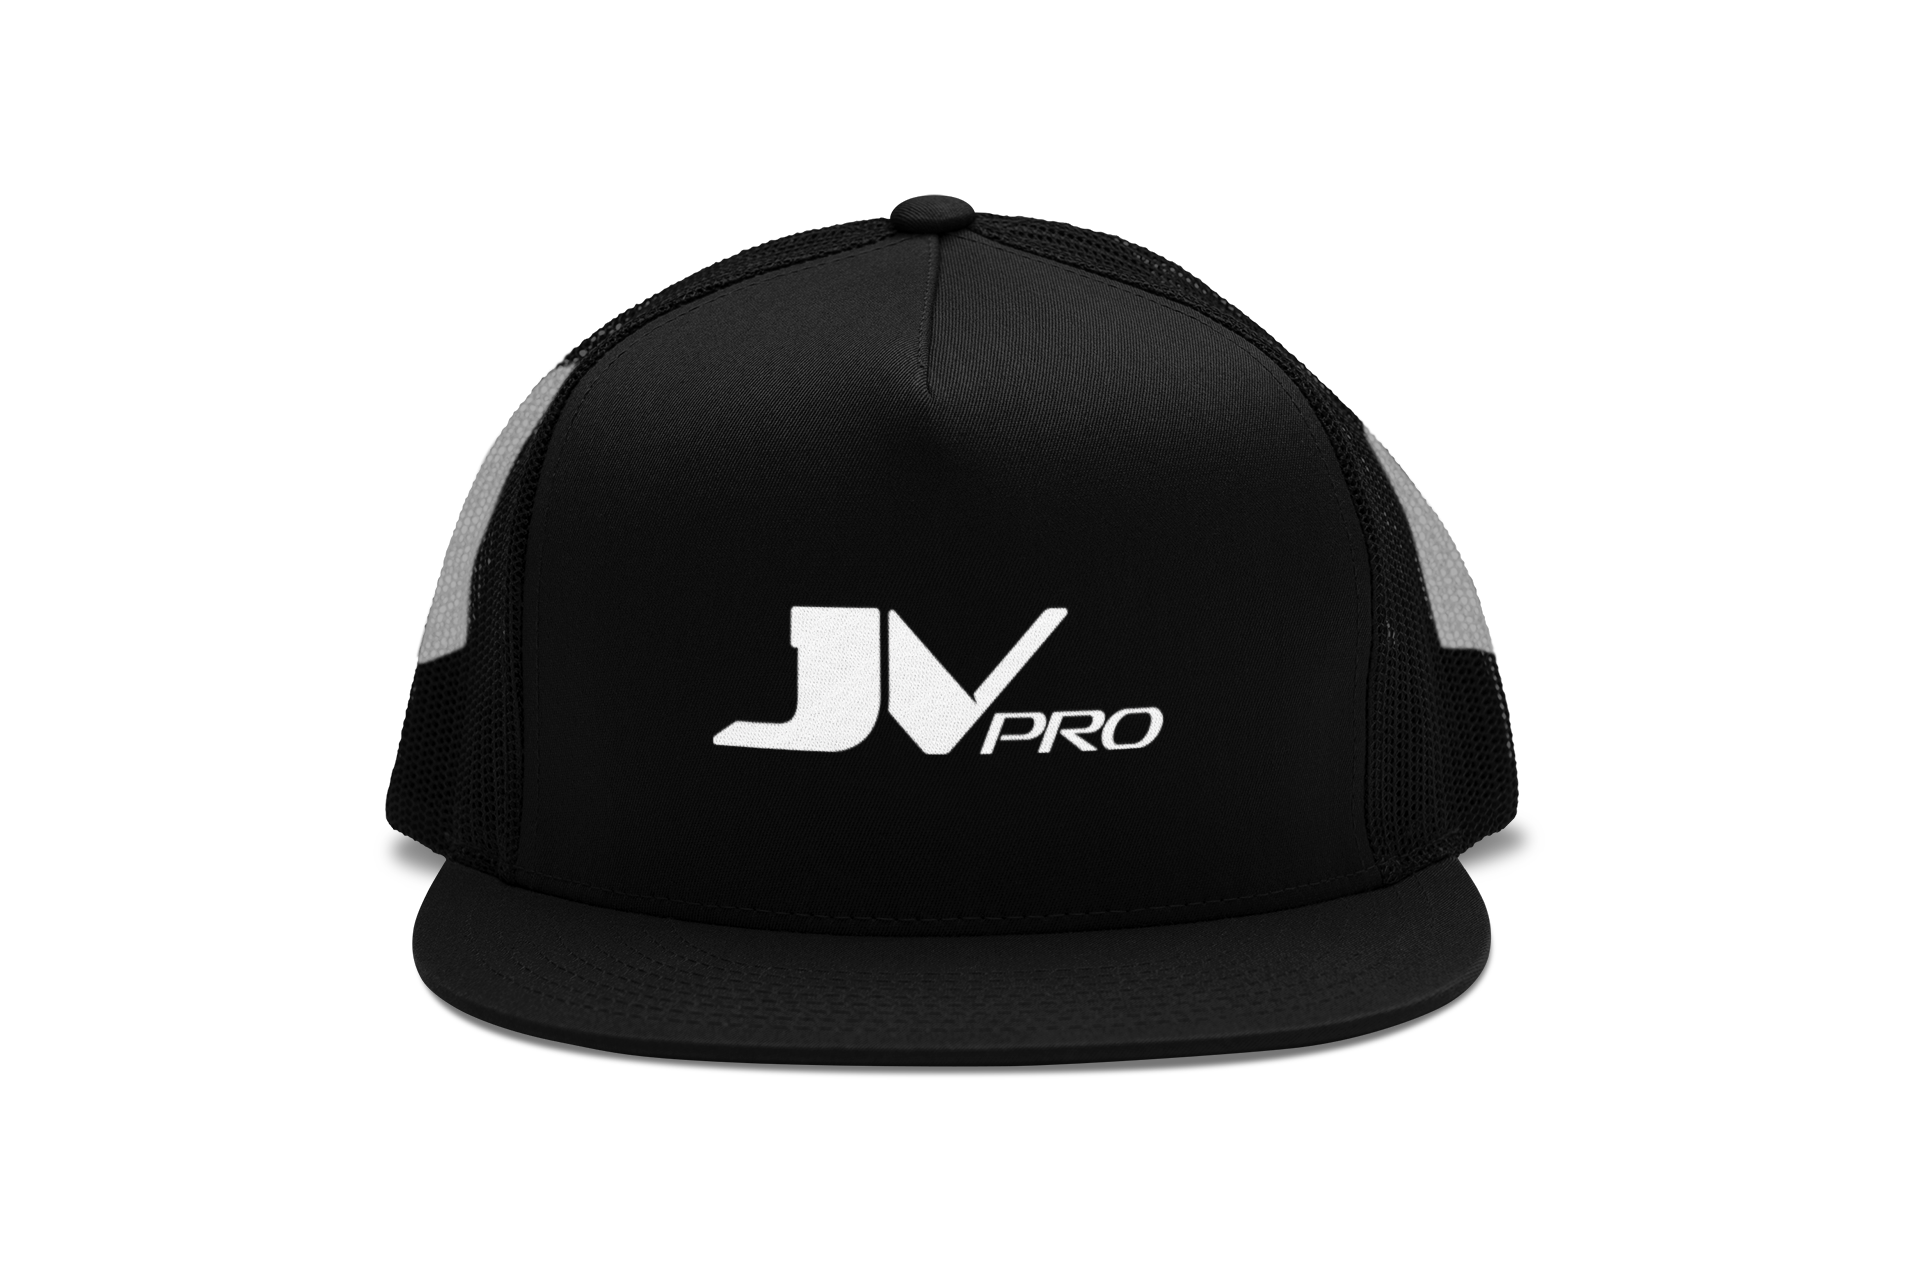 JV PRO Trucker SnapBack Hat - JV PRO USA Snapback